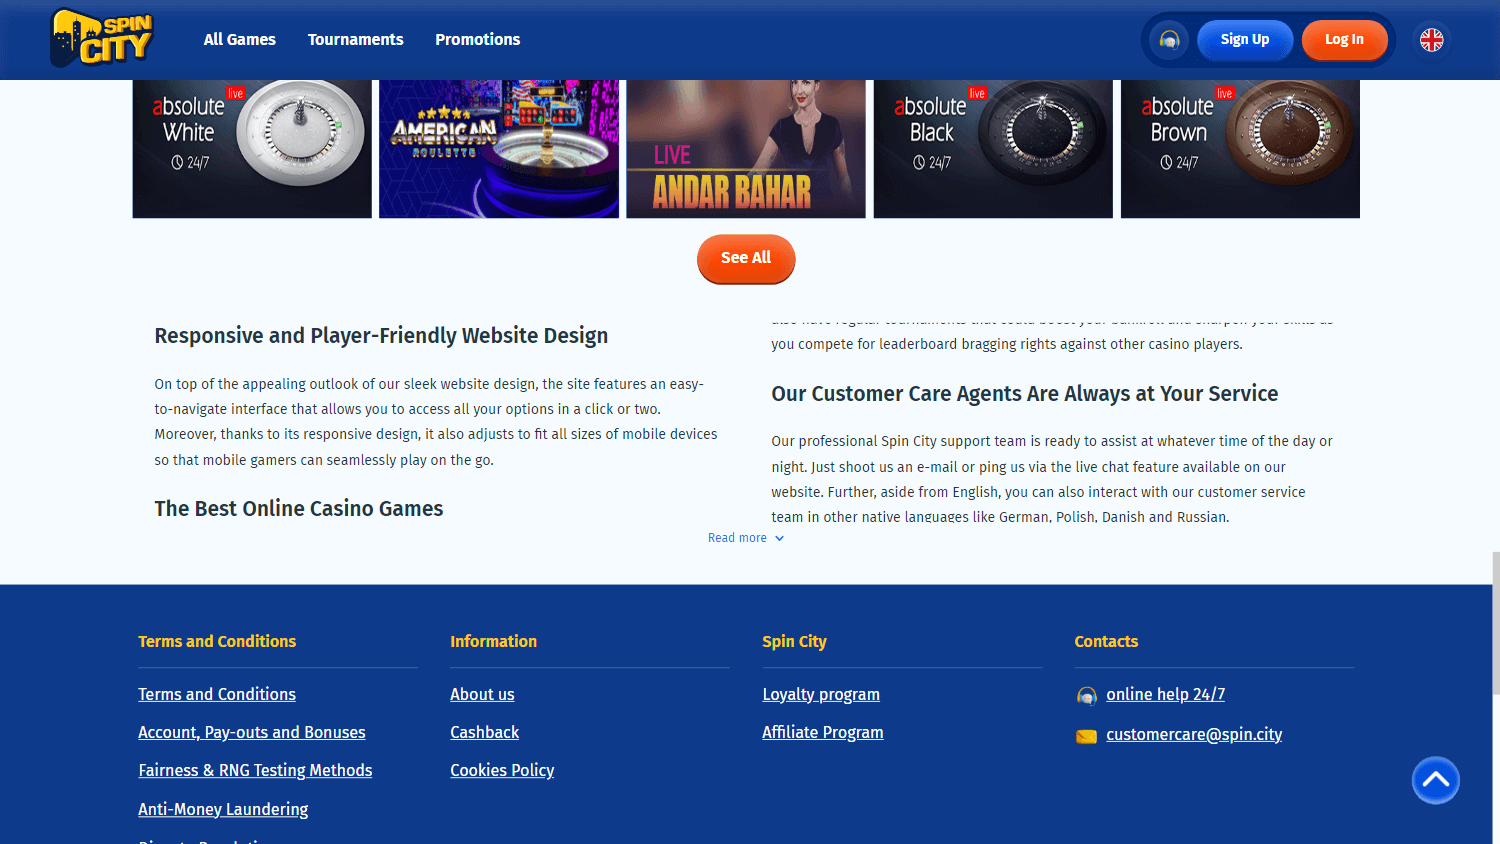 spincity_casino_homepage_desktop